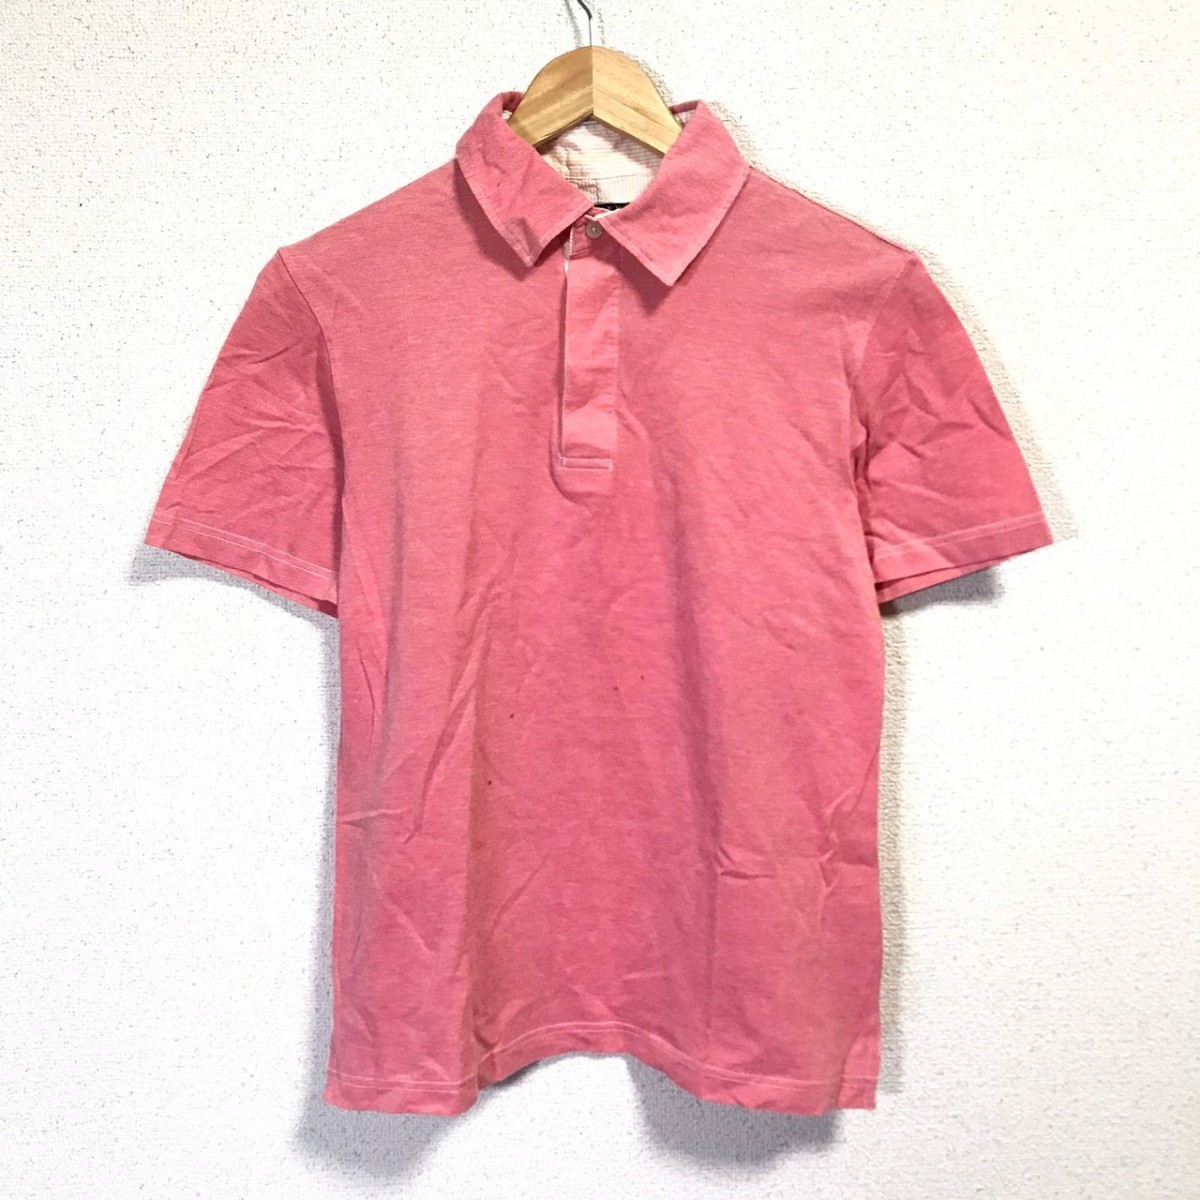 F7635dL 日本製 BARNEYS NEW YORK バーニーズニューヨーク サイズM 半袖 ポロシャツ ピンク レディース カジュアル 綿100% コットンシャツ_画像1